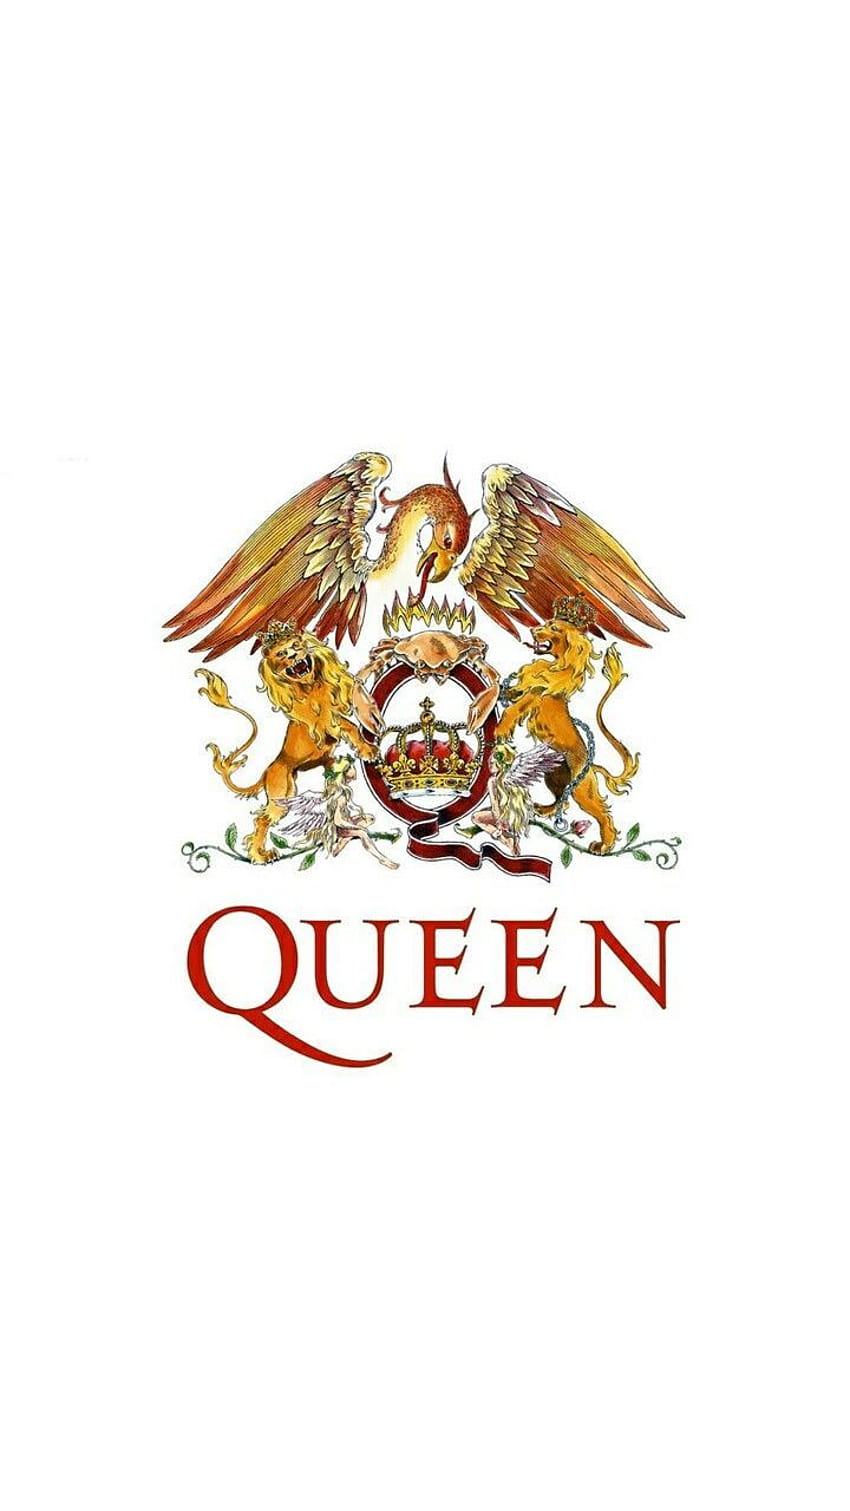 Hình nền logo ban nhạc Queen: Ban nhạc Queen không chỉ với âm nhạc đỉnh cao mà còn có một hình ảnh linh động và khác biệt. Logo của họ là biểu tượng của sự phóng khoáng và cá tính. Hãy xem hình nền logo của Queen để cảm nhận sự hoàn hảo trong thiết kế đồ họa.